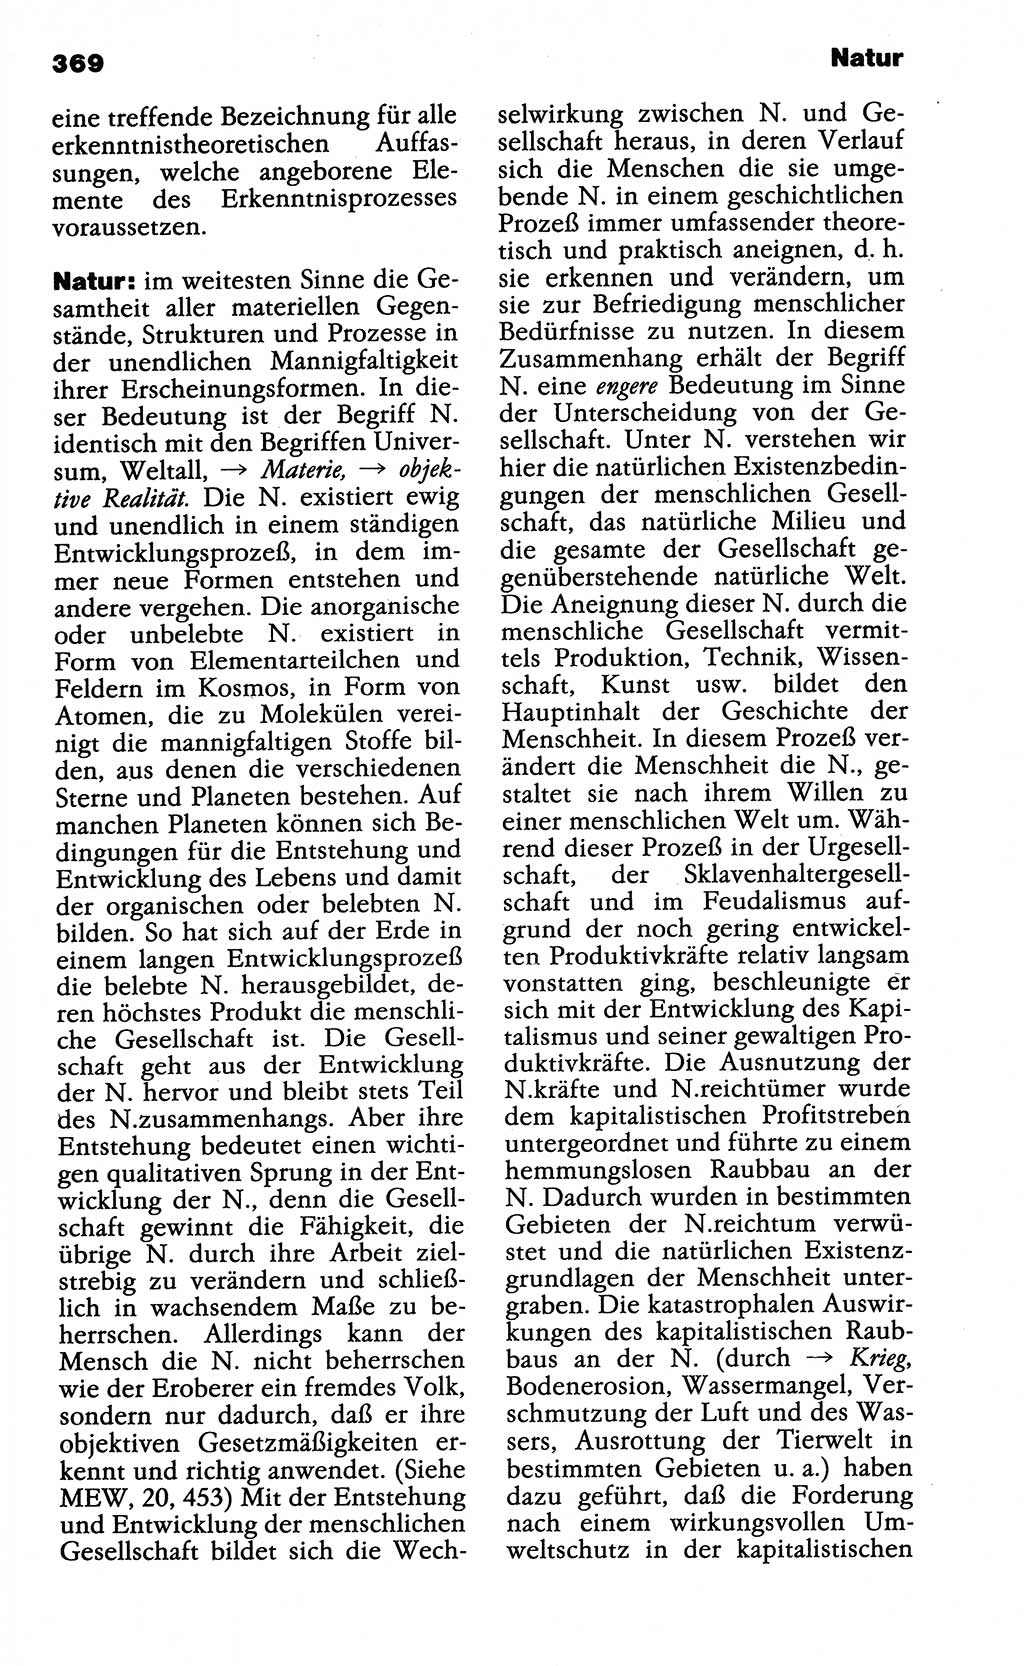 Wörterbuch der marxistisch-leninistischen Philosophie [Deutsche Demokratische Republik (DDR)] 1985, Seite 369 (Wb. ML Phil. DDR 1985, S. 369)